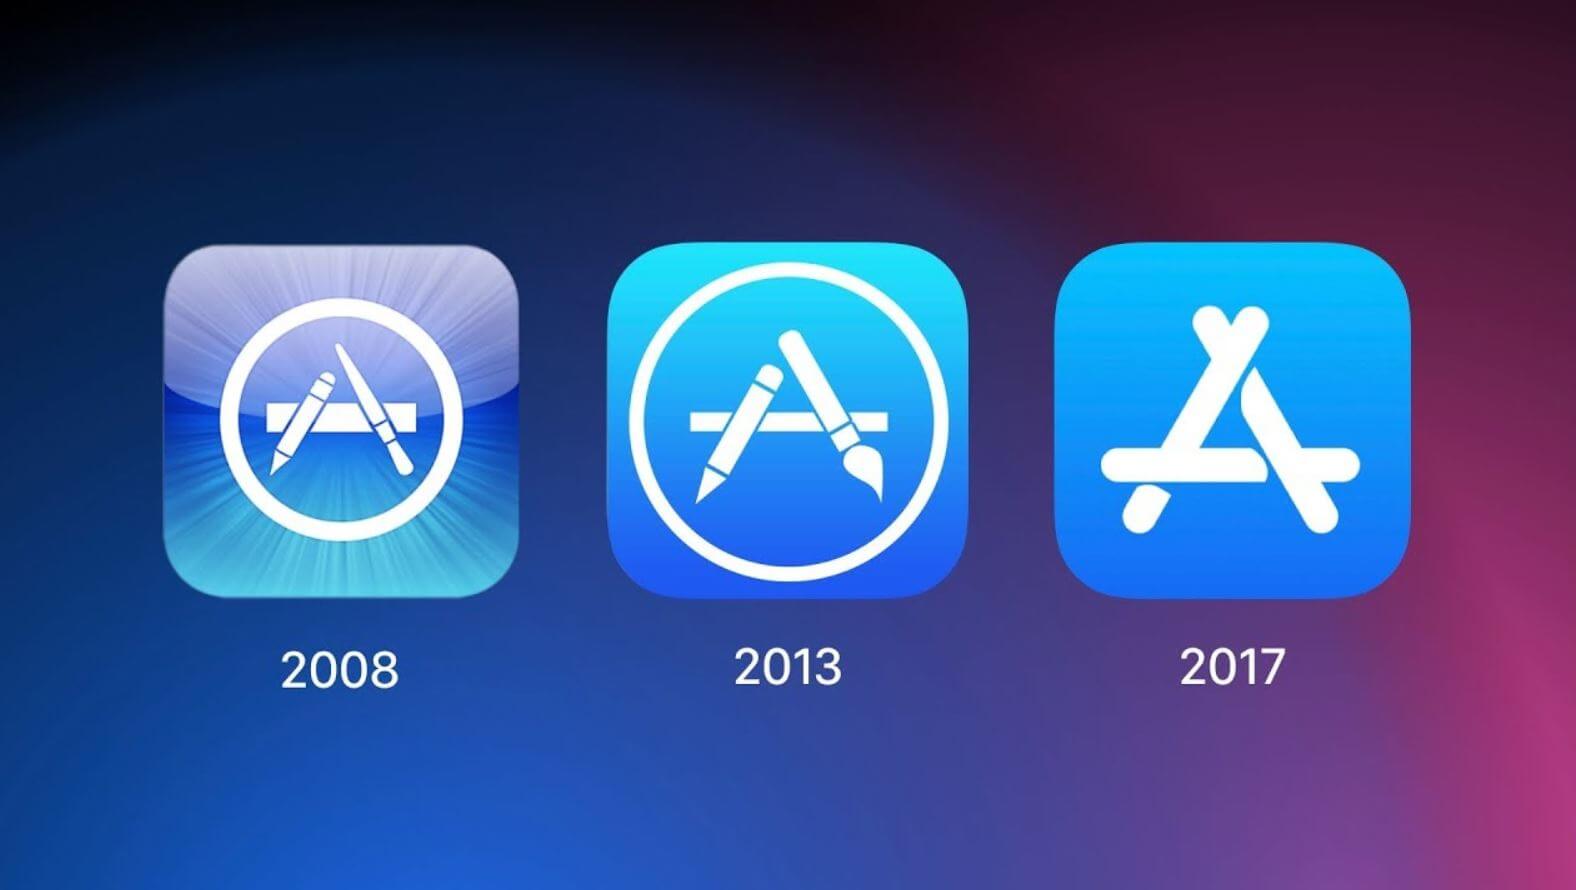 Эти версии iOS сделали iPhone лучшим в мире. Вспомни их, если забыл